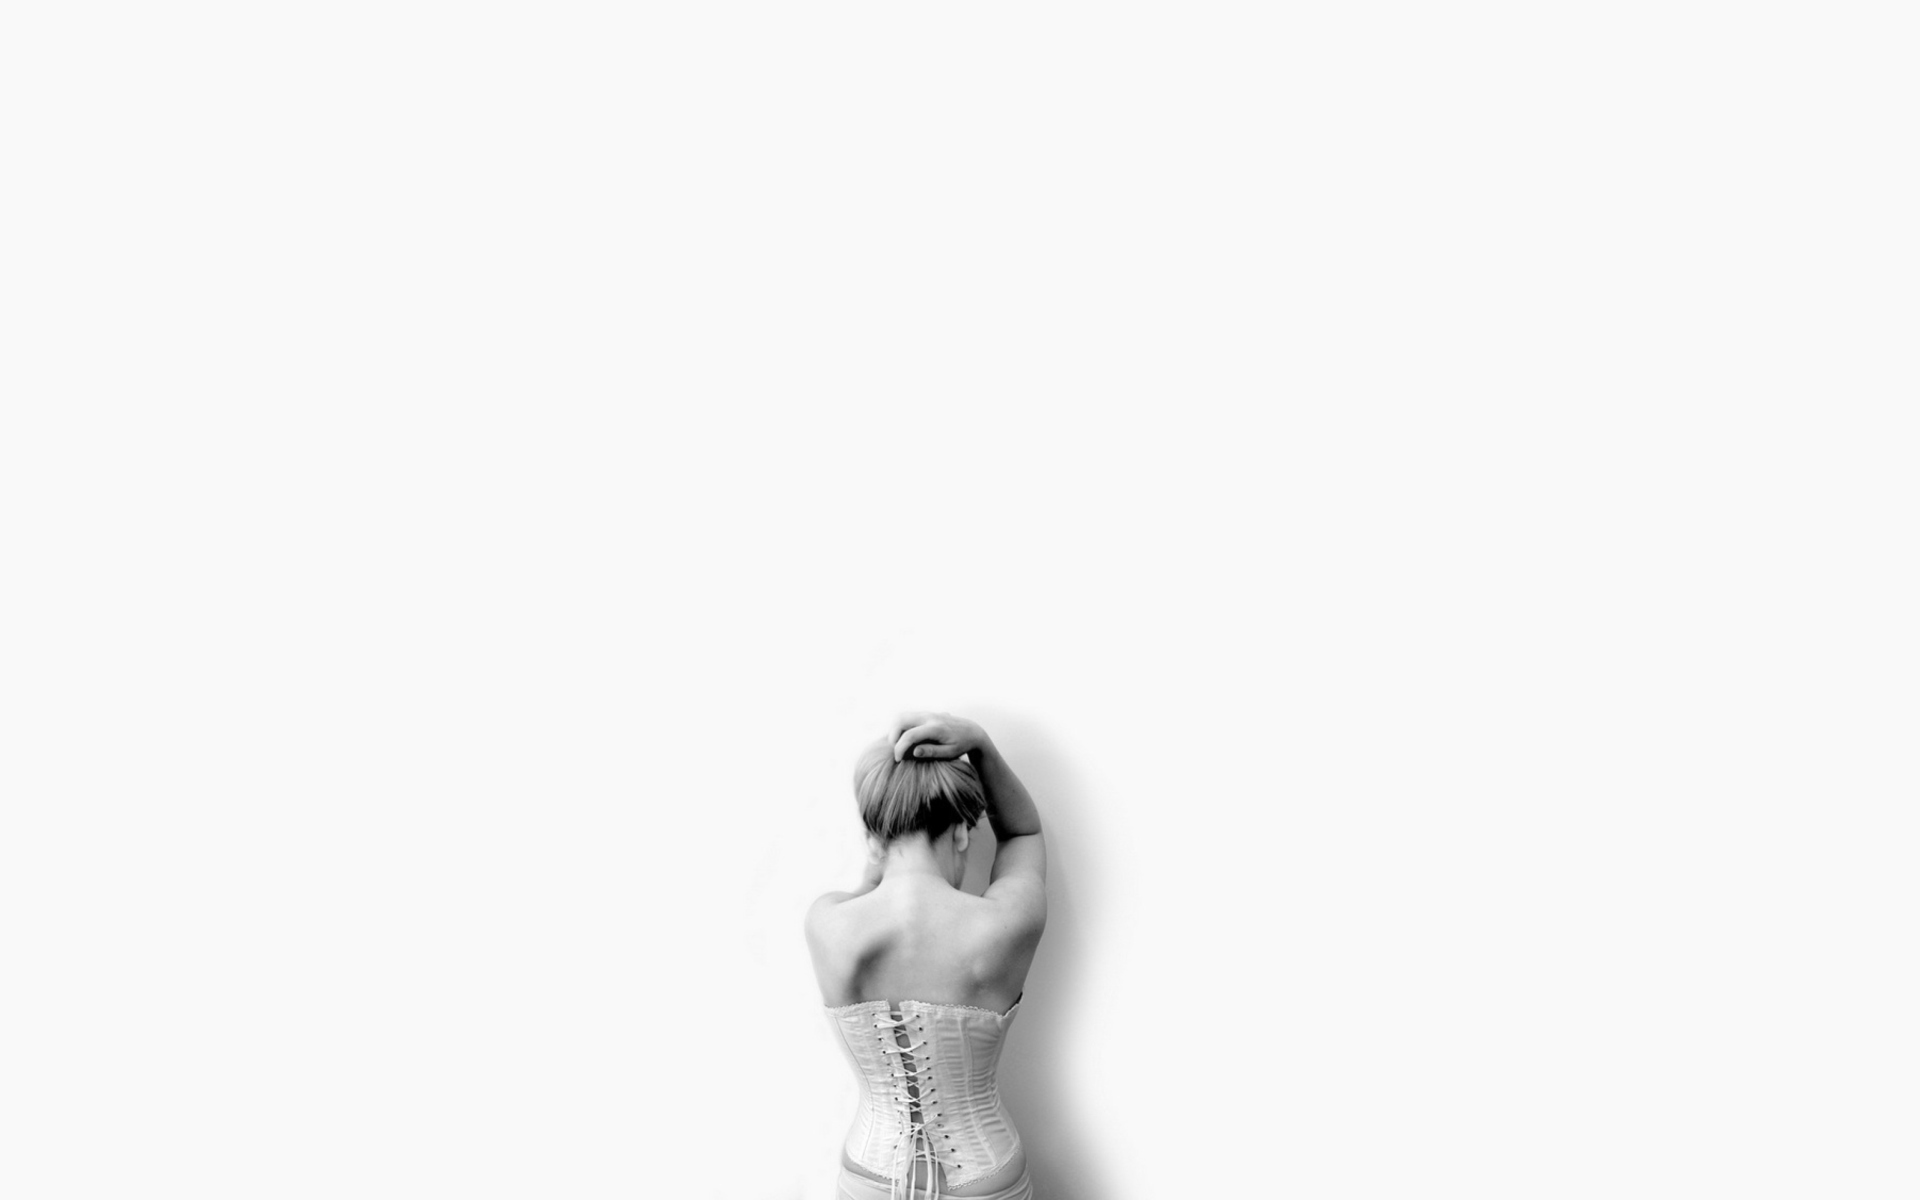 Das White Sadness Wallpaper 1920x1200